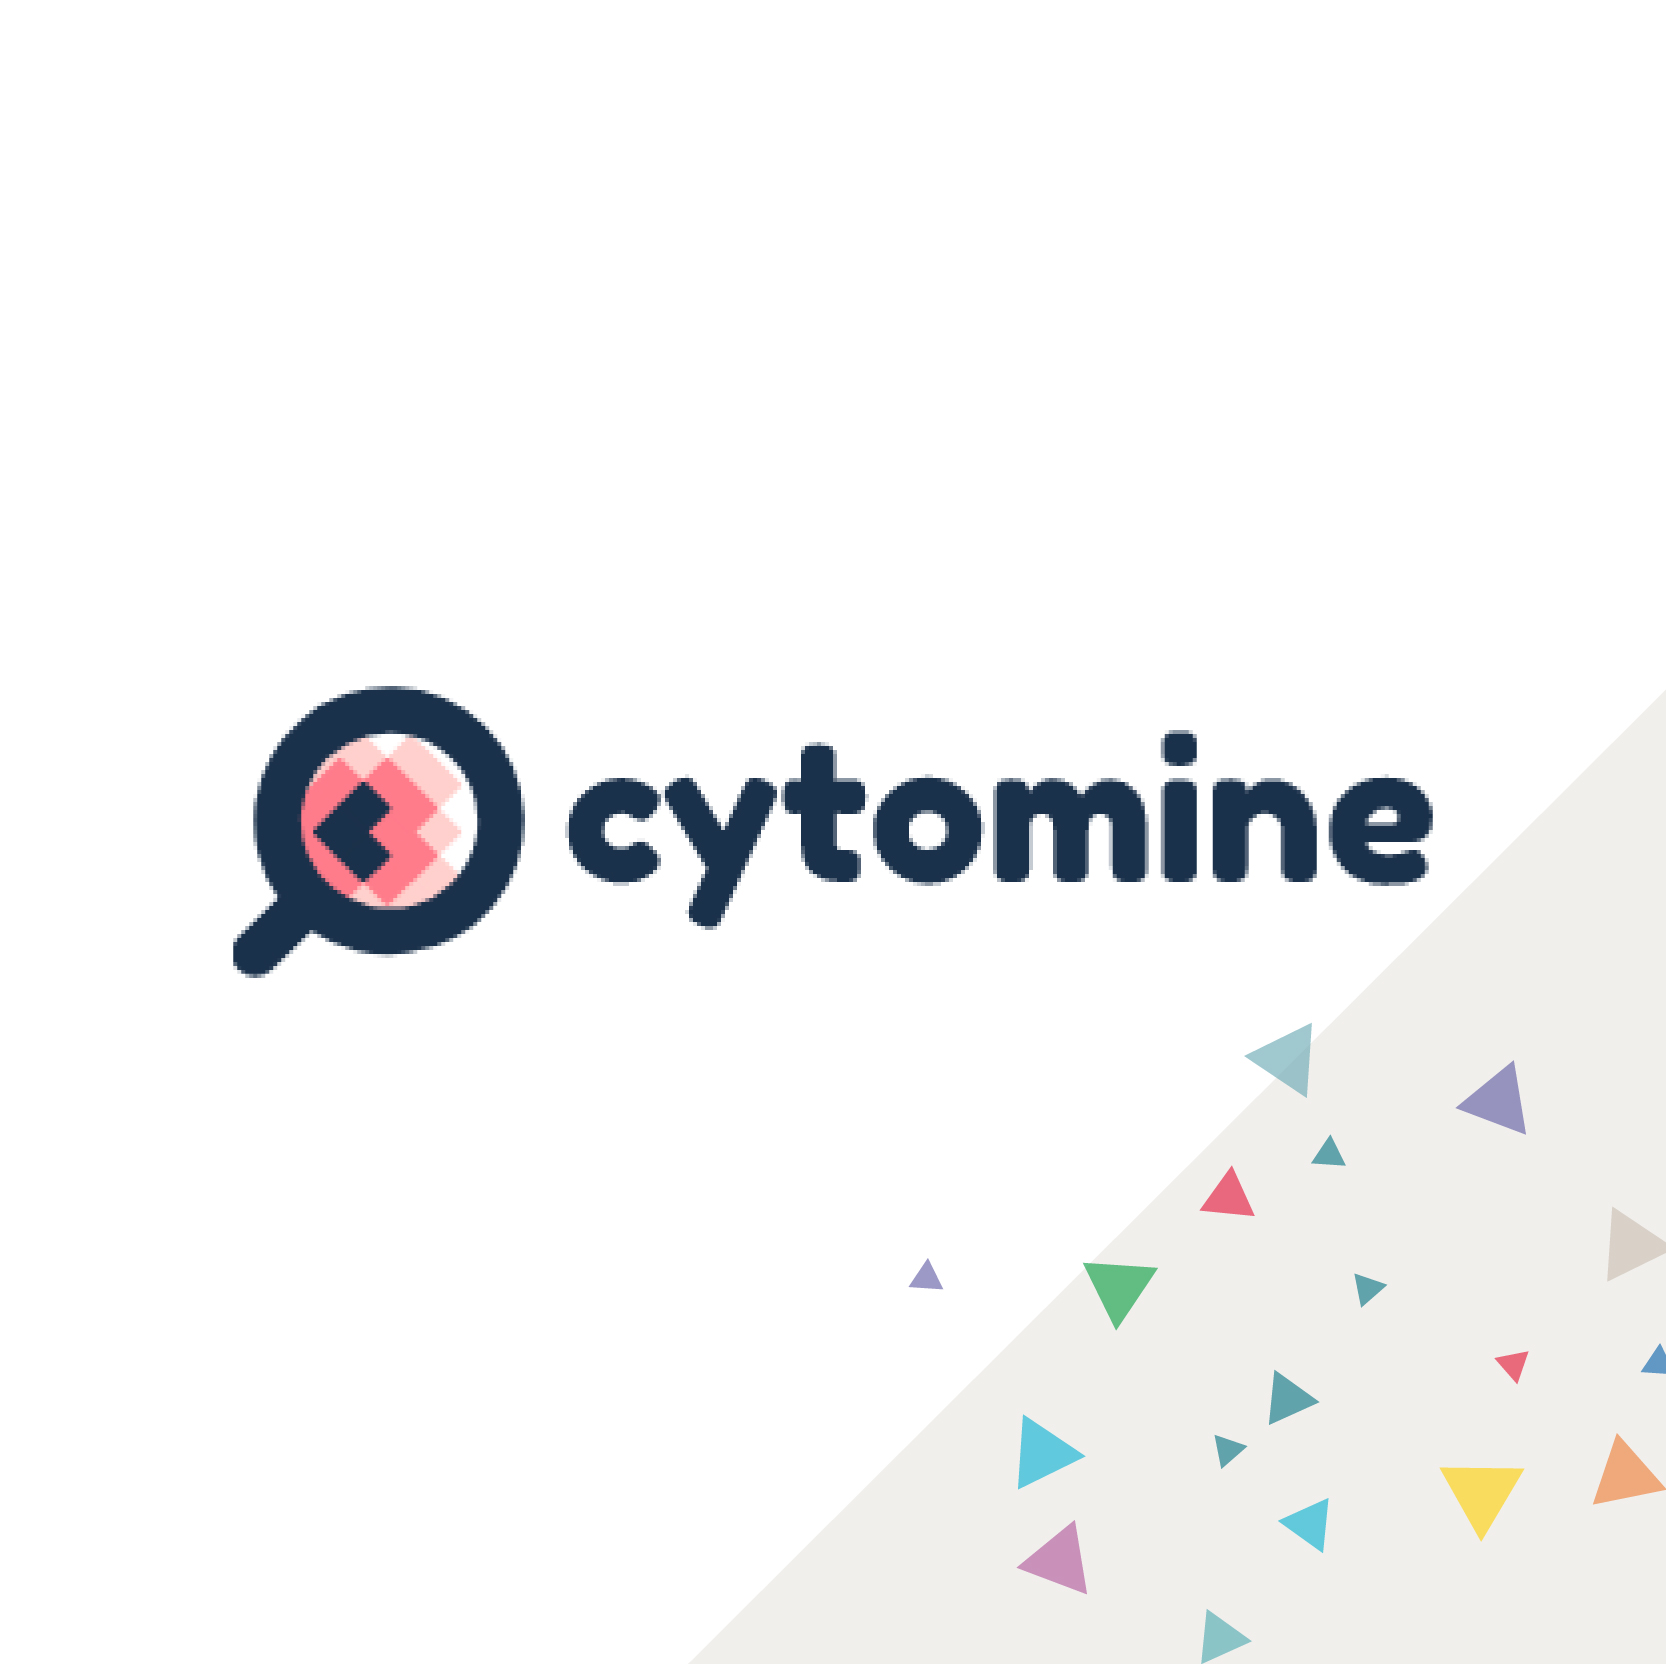 Cytomine